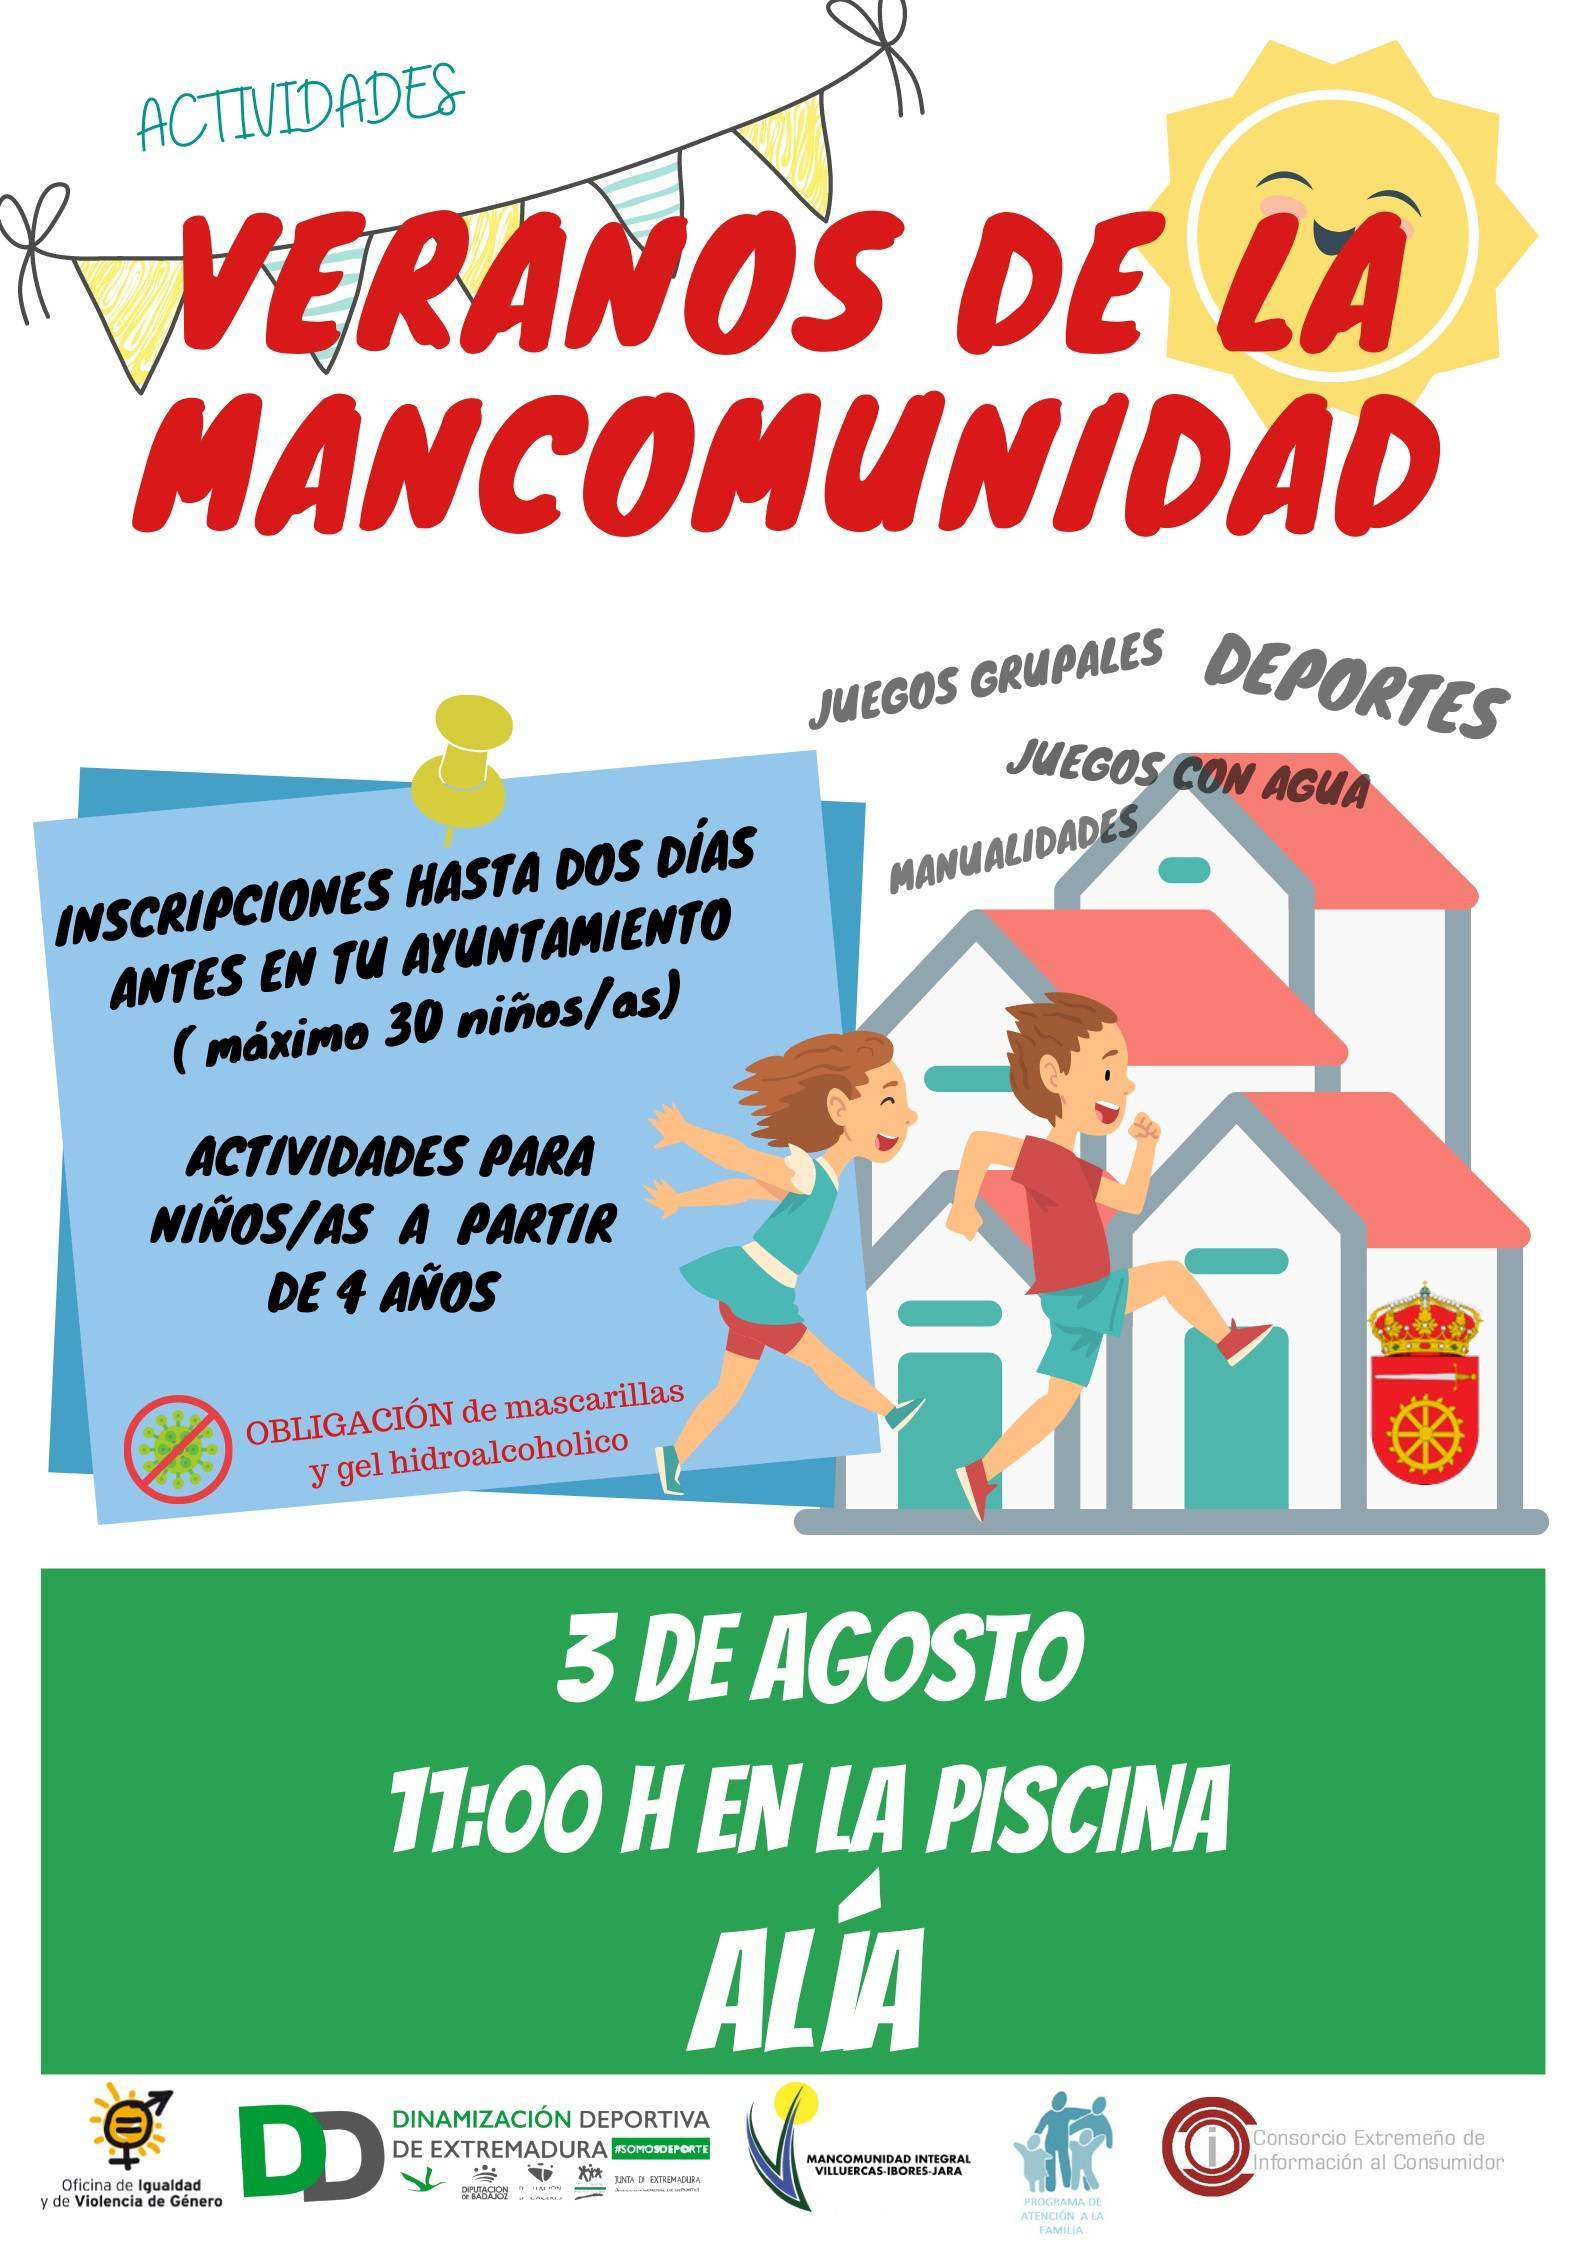 Veranos de la Mancomunidad (2021) - Alía (Cáceres)